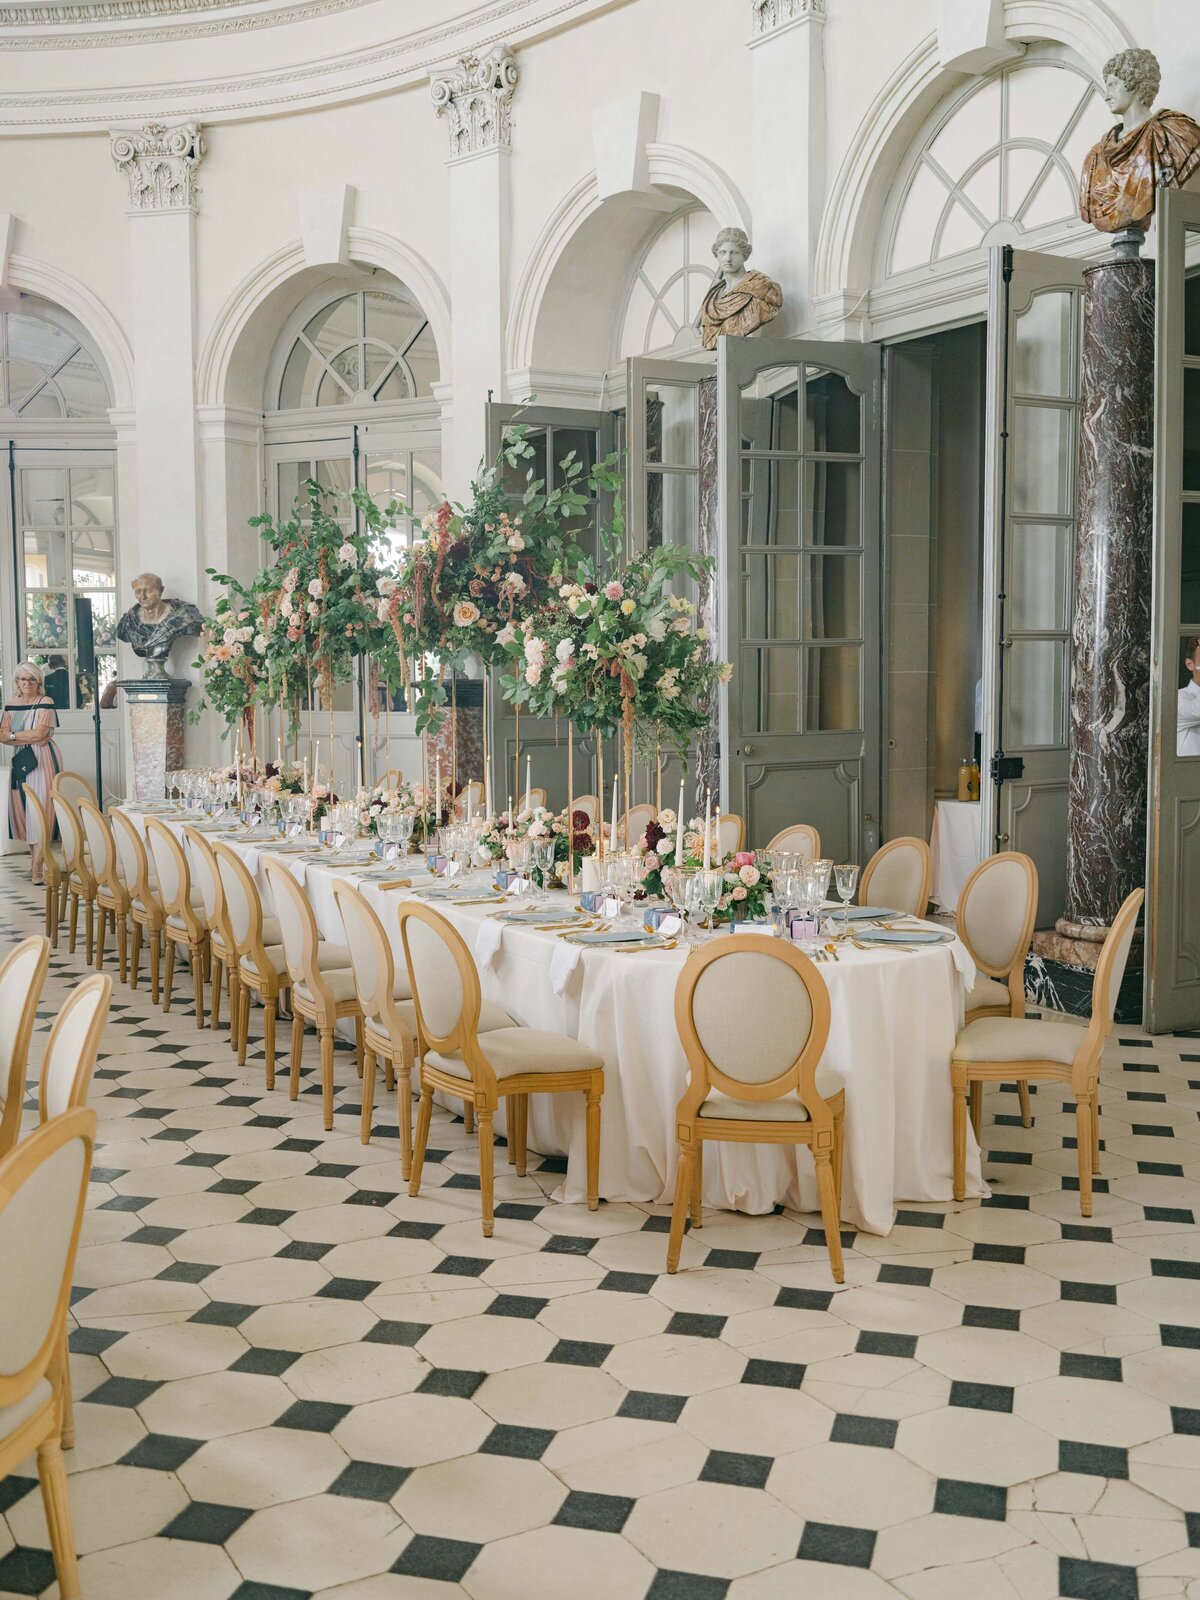 Chateau-Vaux-le-vicomte-wedding-florist-FLORAISON26